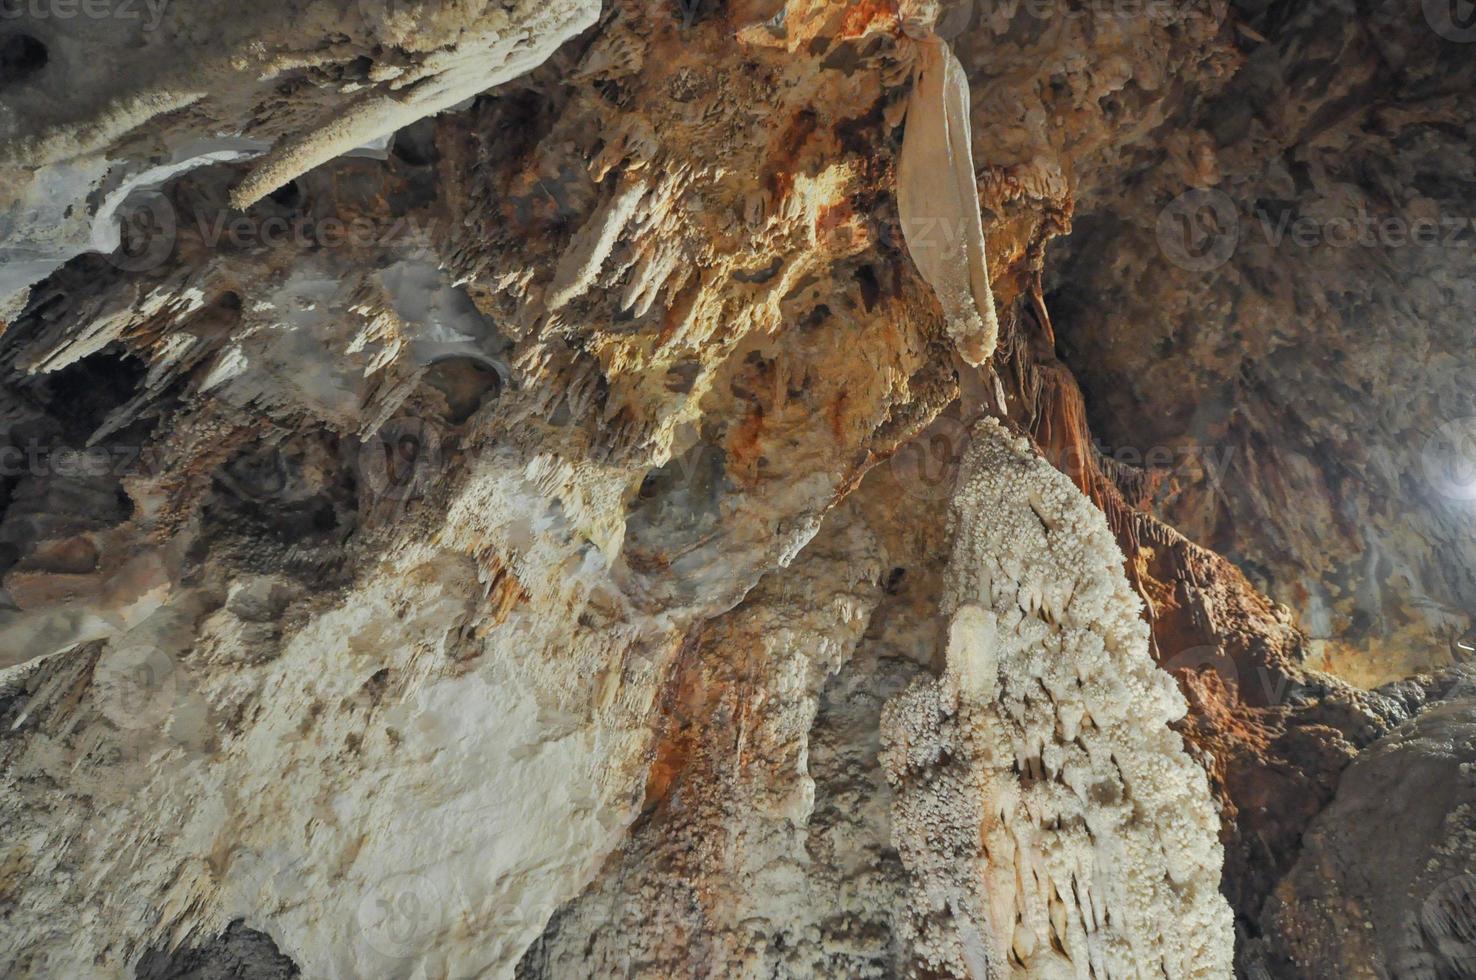 grotte di toirano signifie que les grottes de toirano sont un système de grottes karstiques photo